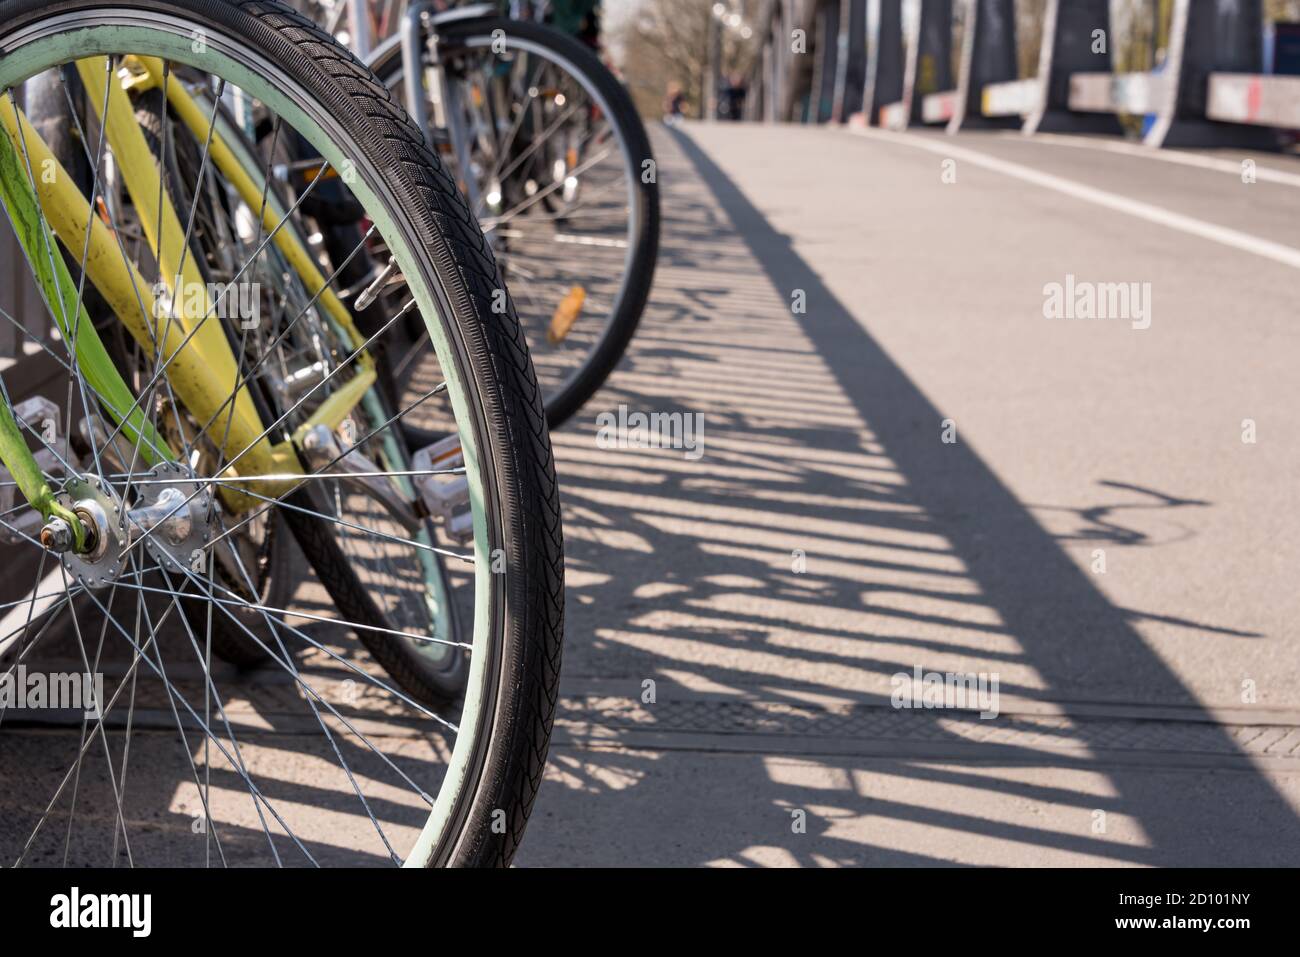 Chaotische Fahrrad/bike Parken in einer Stadt - Verkehr, öffentlicher Verkehr - gestohlene Fahrräder, alte Fahrräder, Fahrrad Diebstahl - Kopie Raum Stockfoto